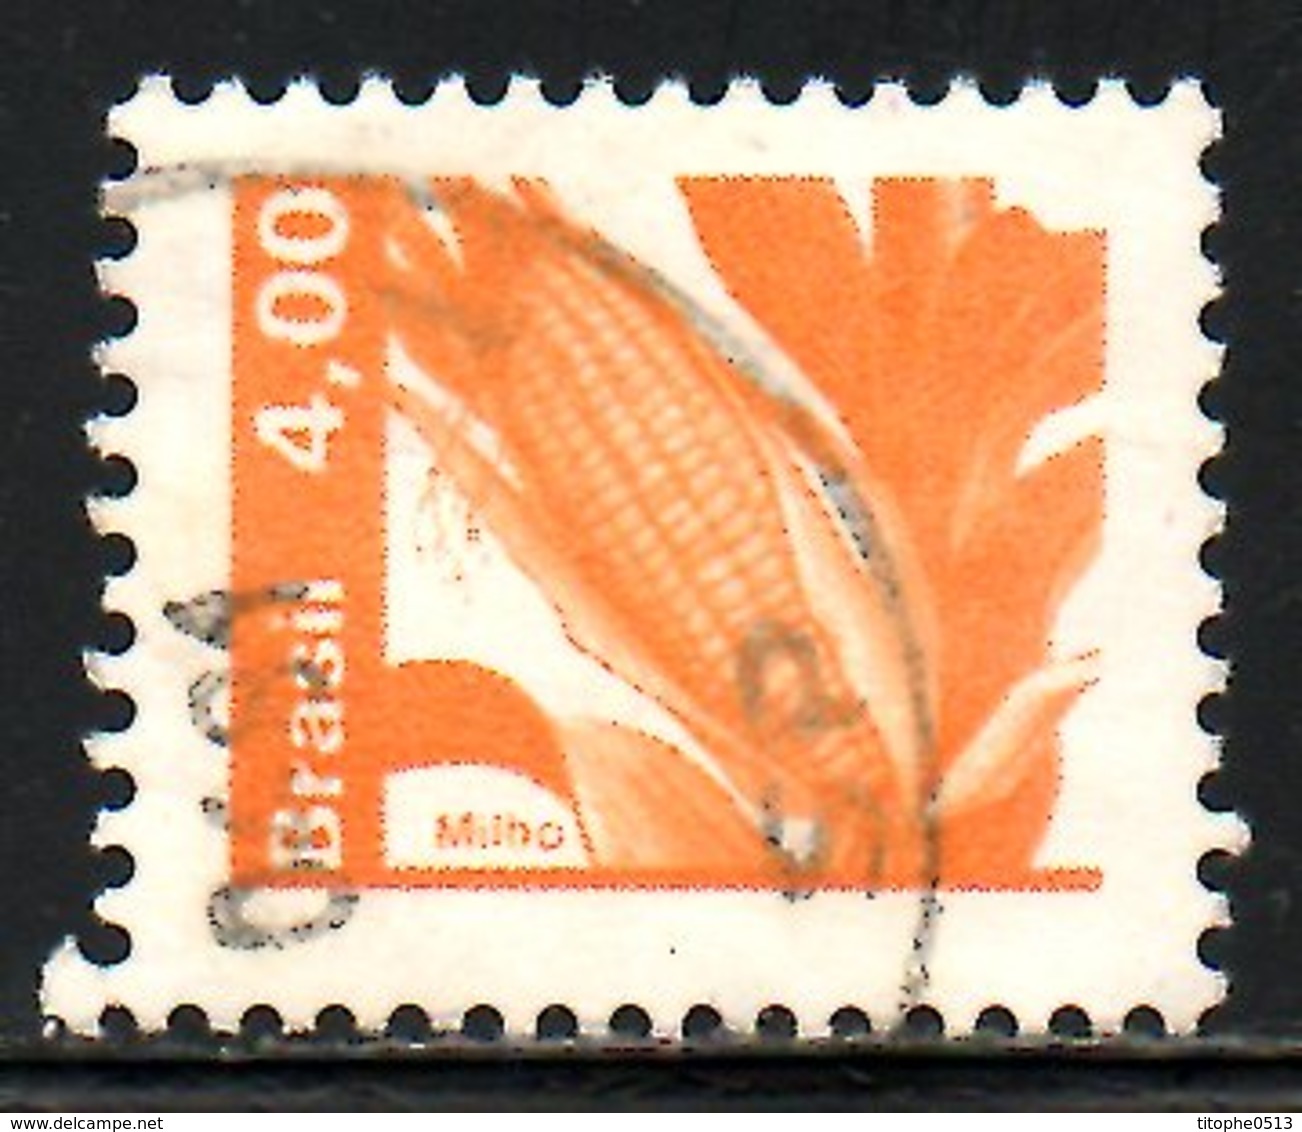 BRESIL. N°1418 Oblitéré De 1980. Maïs. - Agriculture